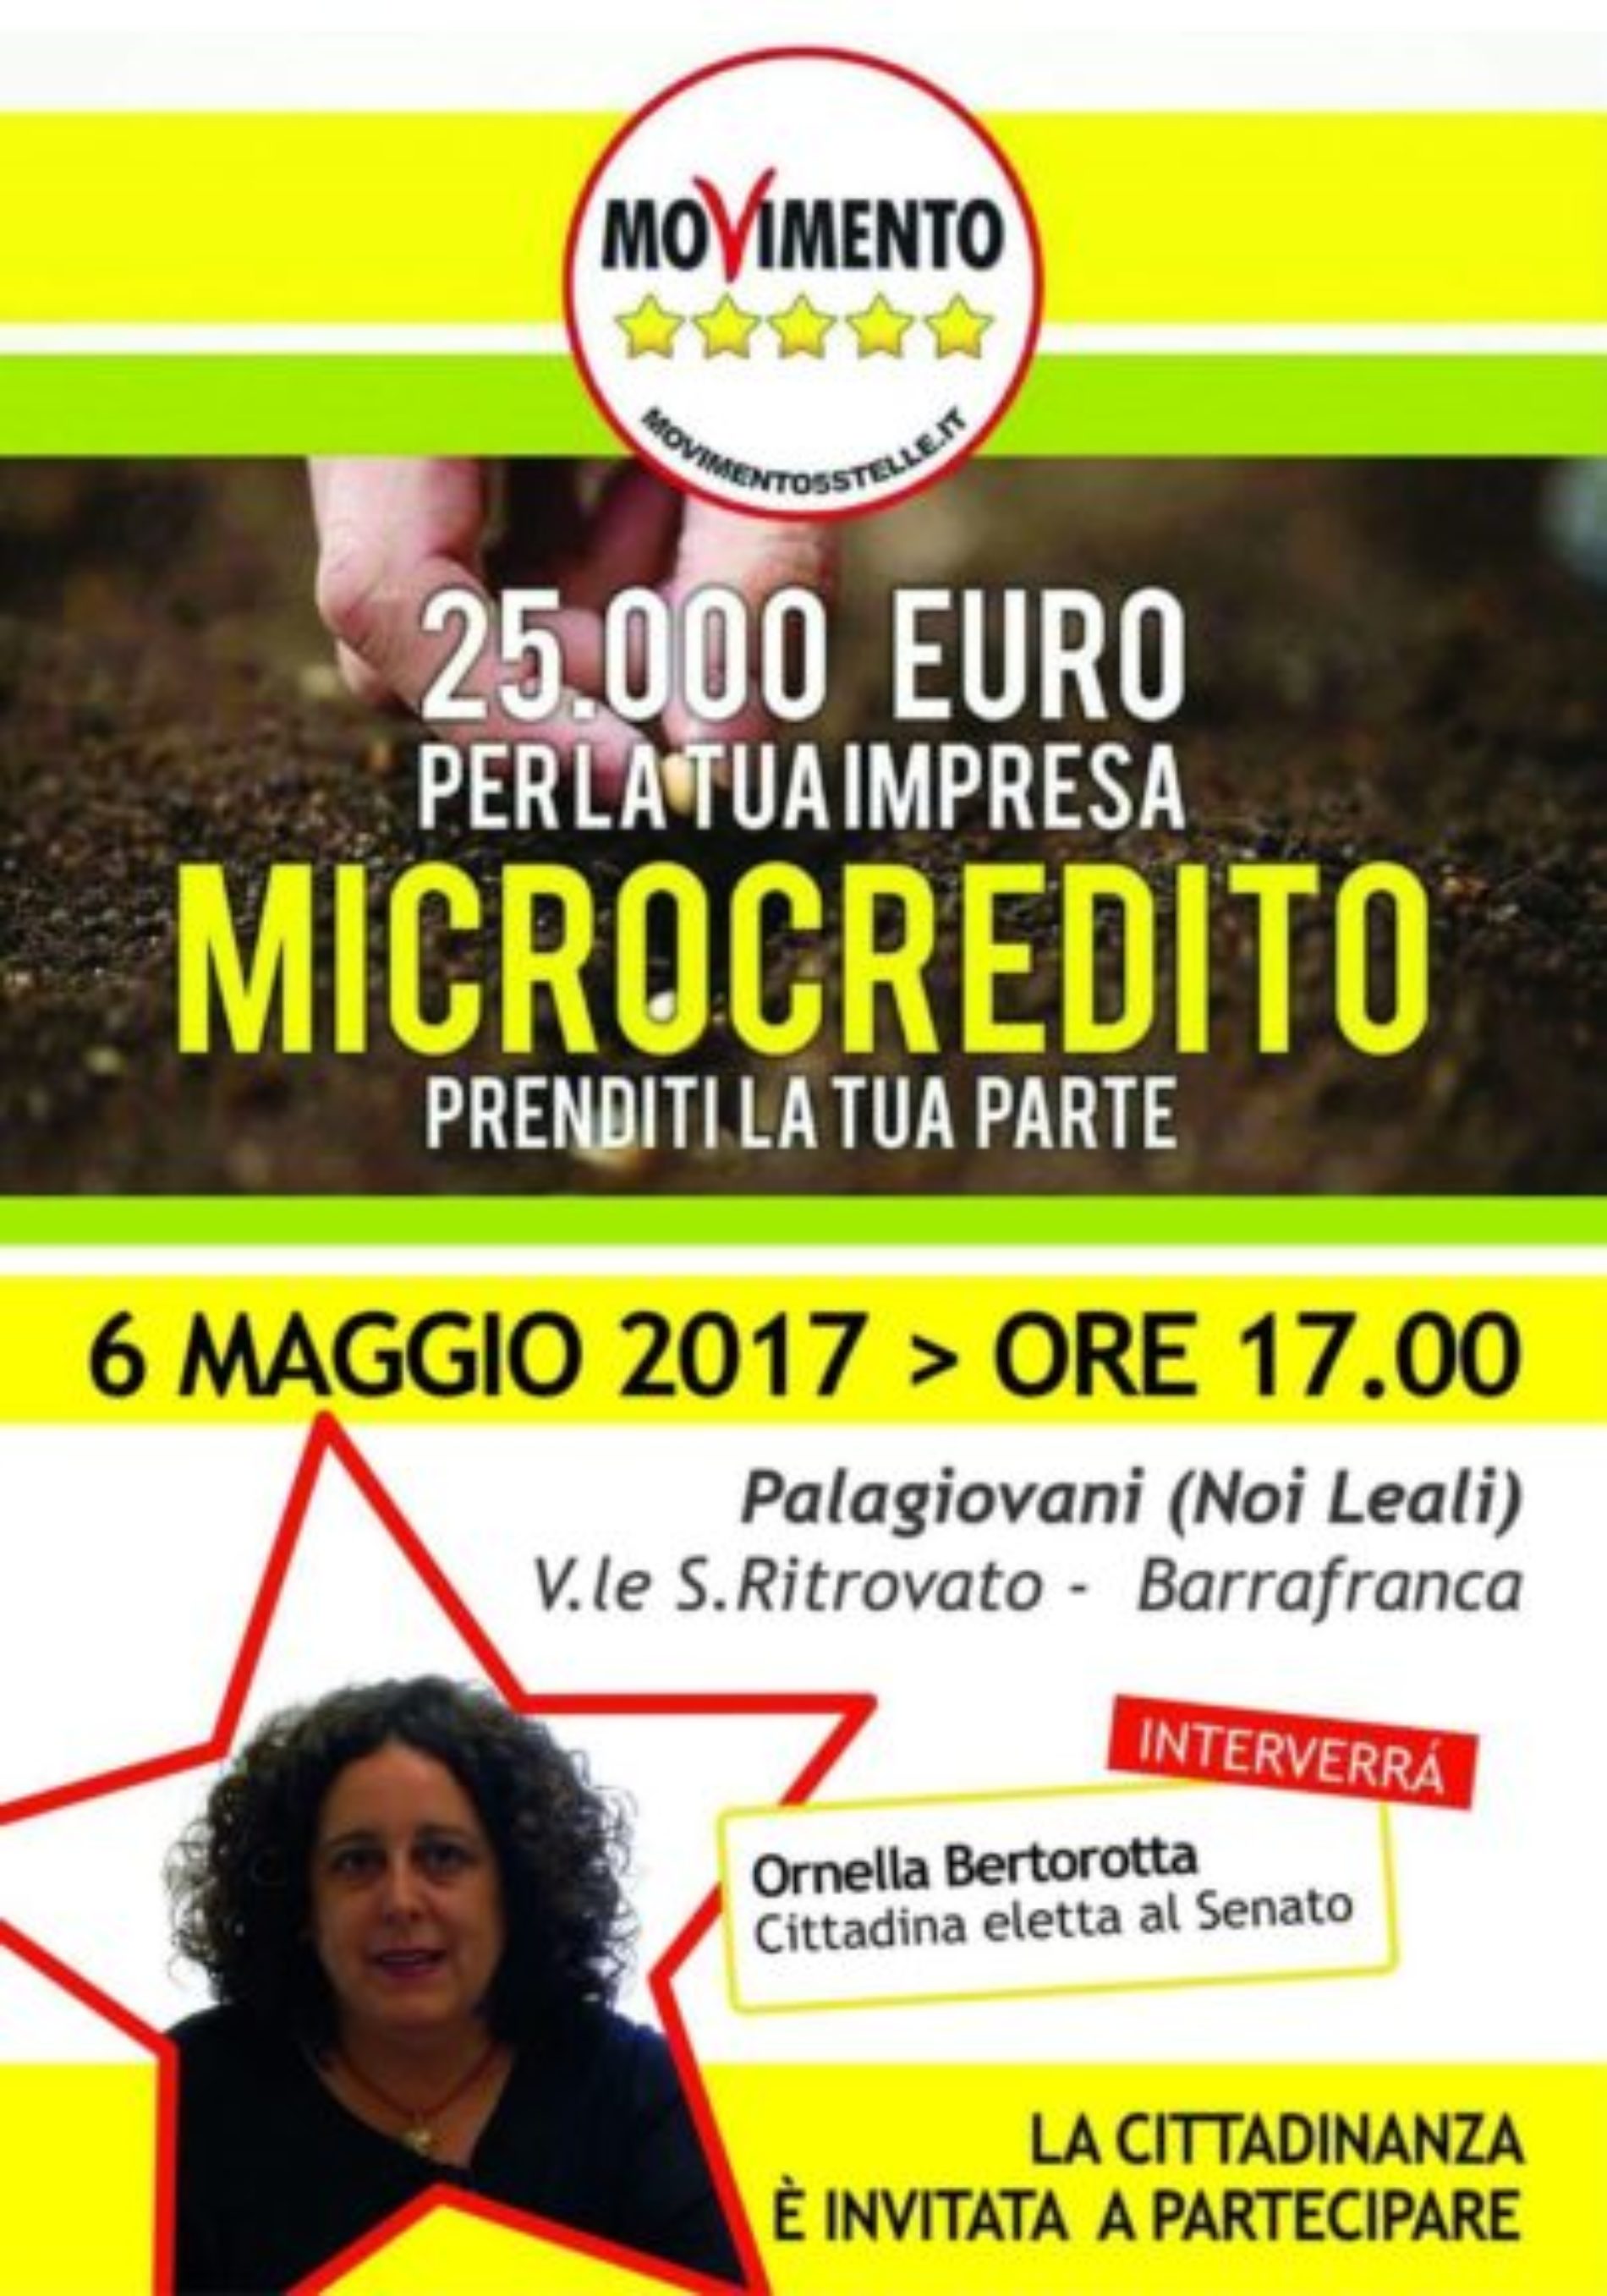 La Cittadina al Senato Ornella Bertorotta a Barrafranca per parlare di Microcredito